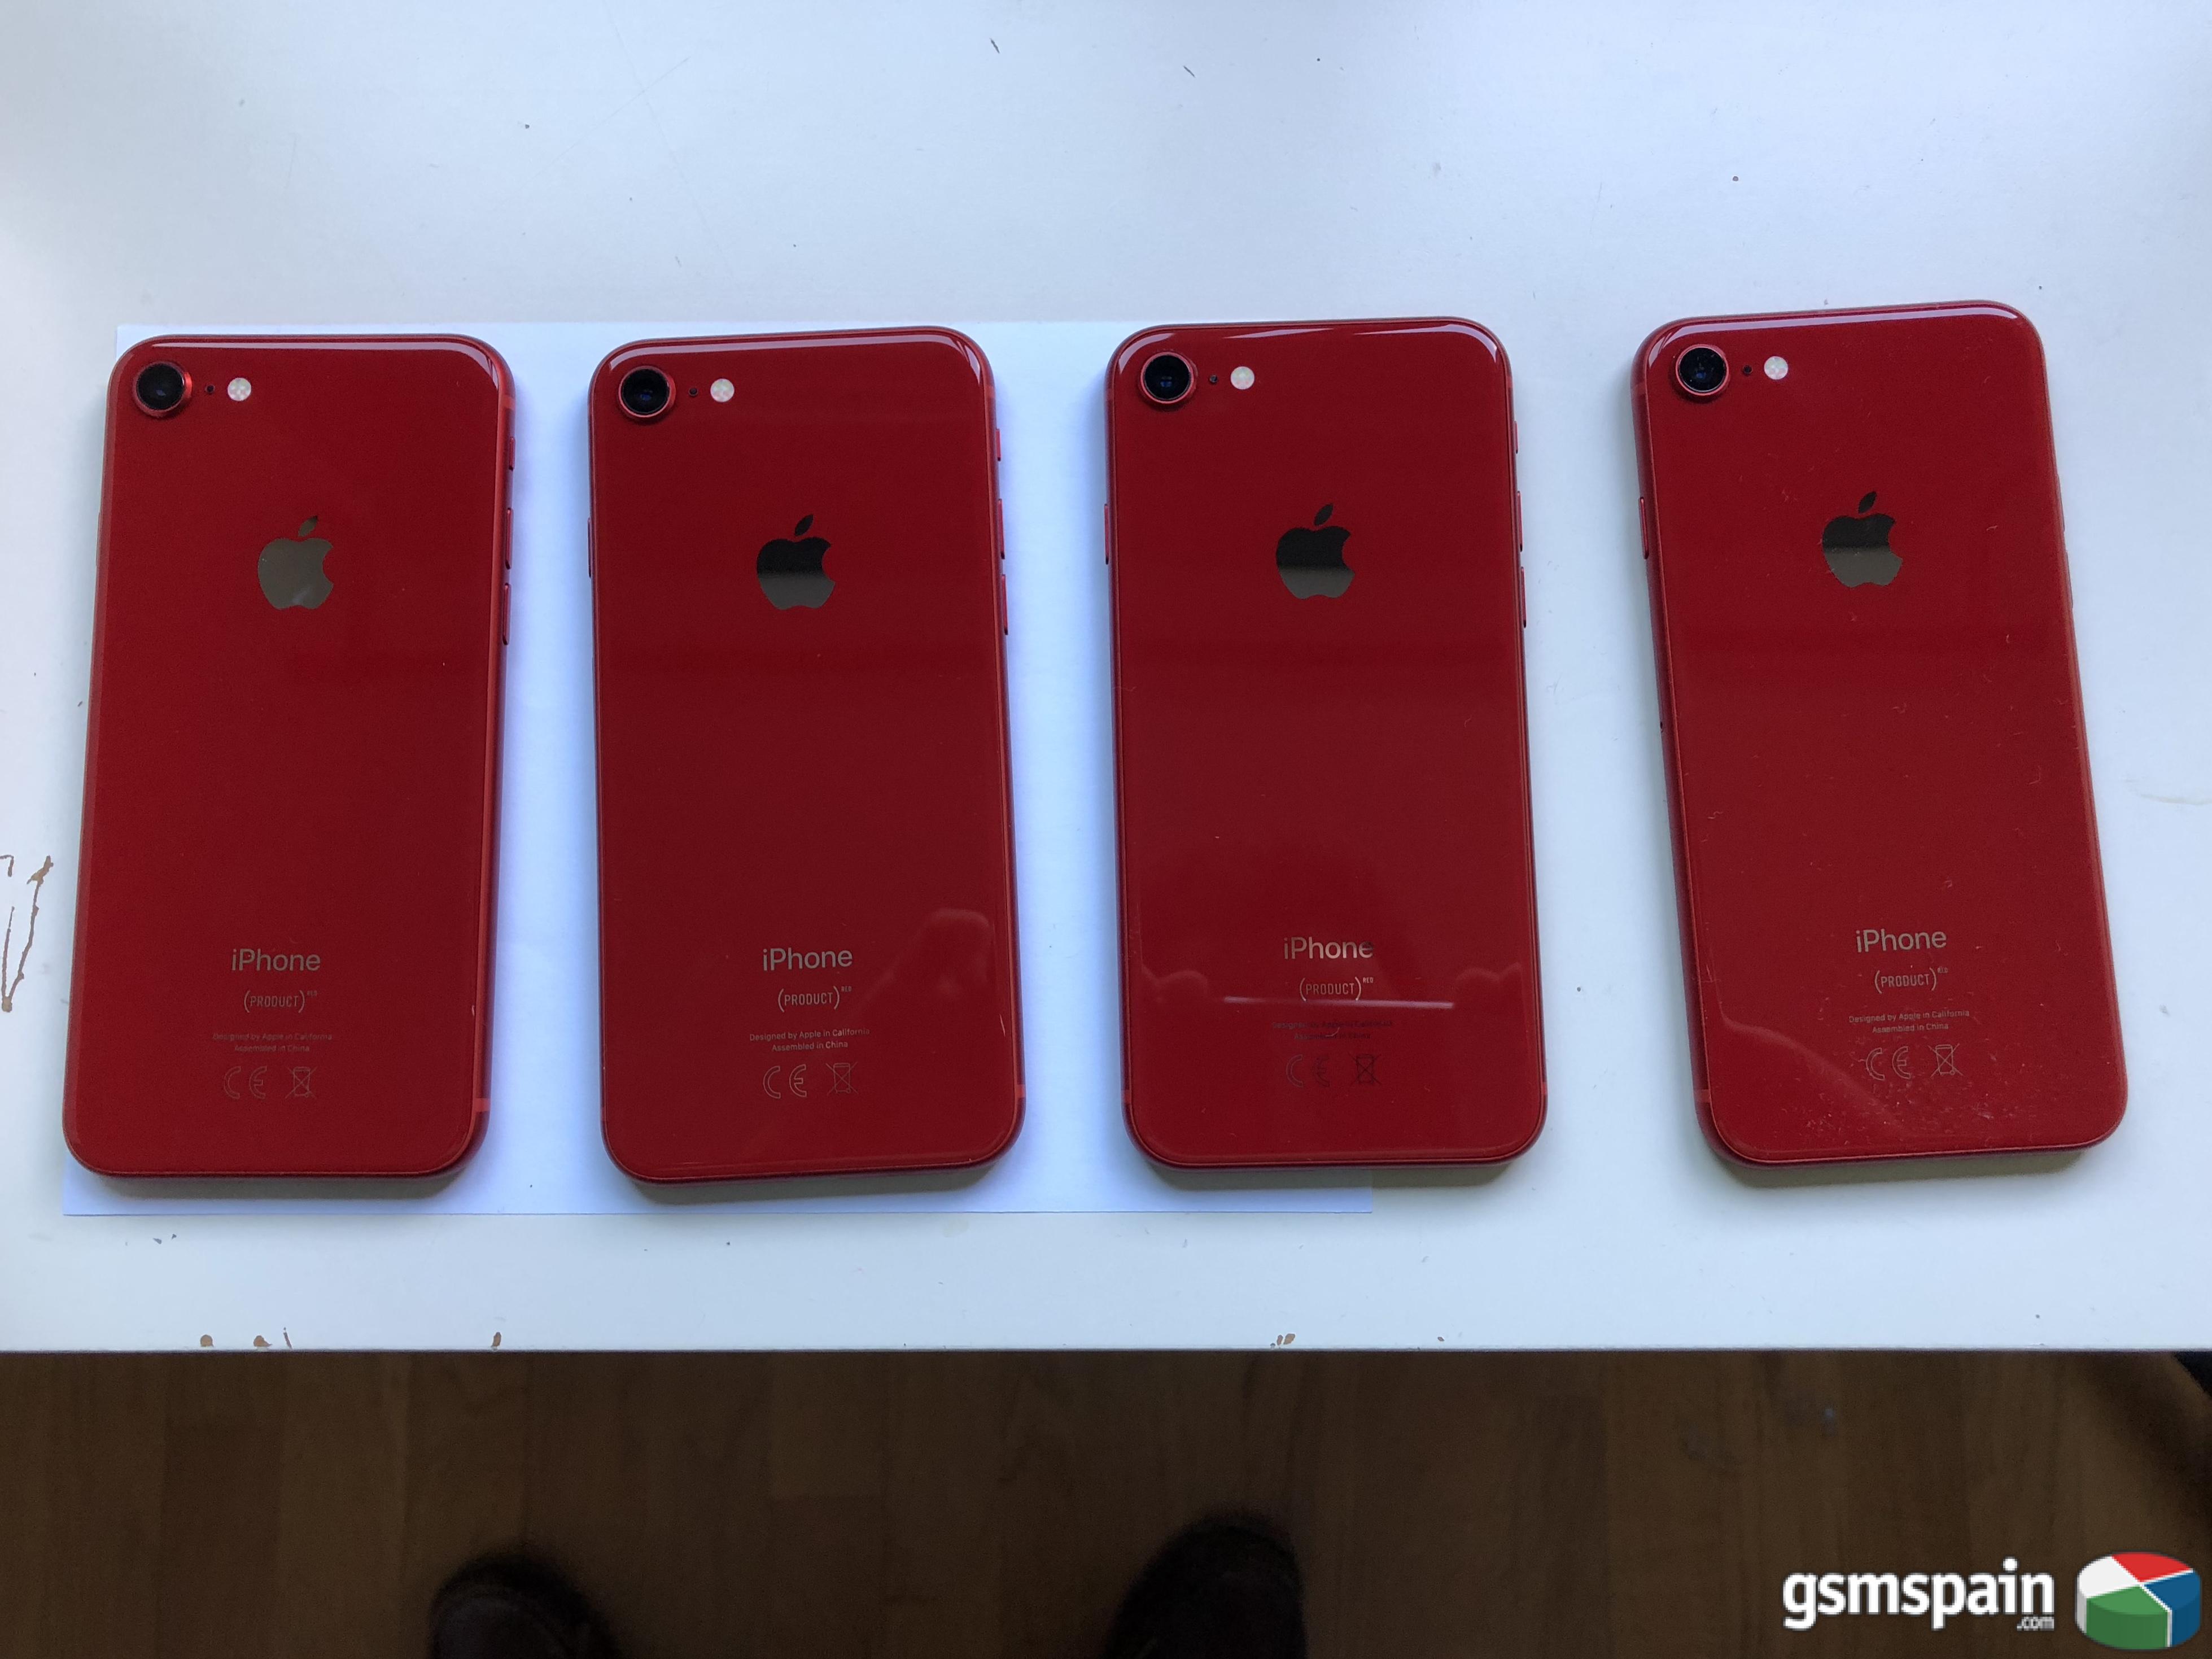 [VENDO] Iphone 8 64gb red product (rojo) en perfecto estado